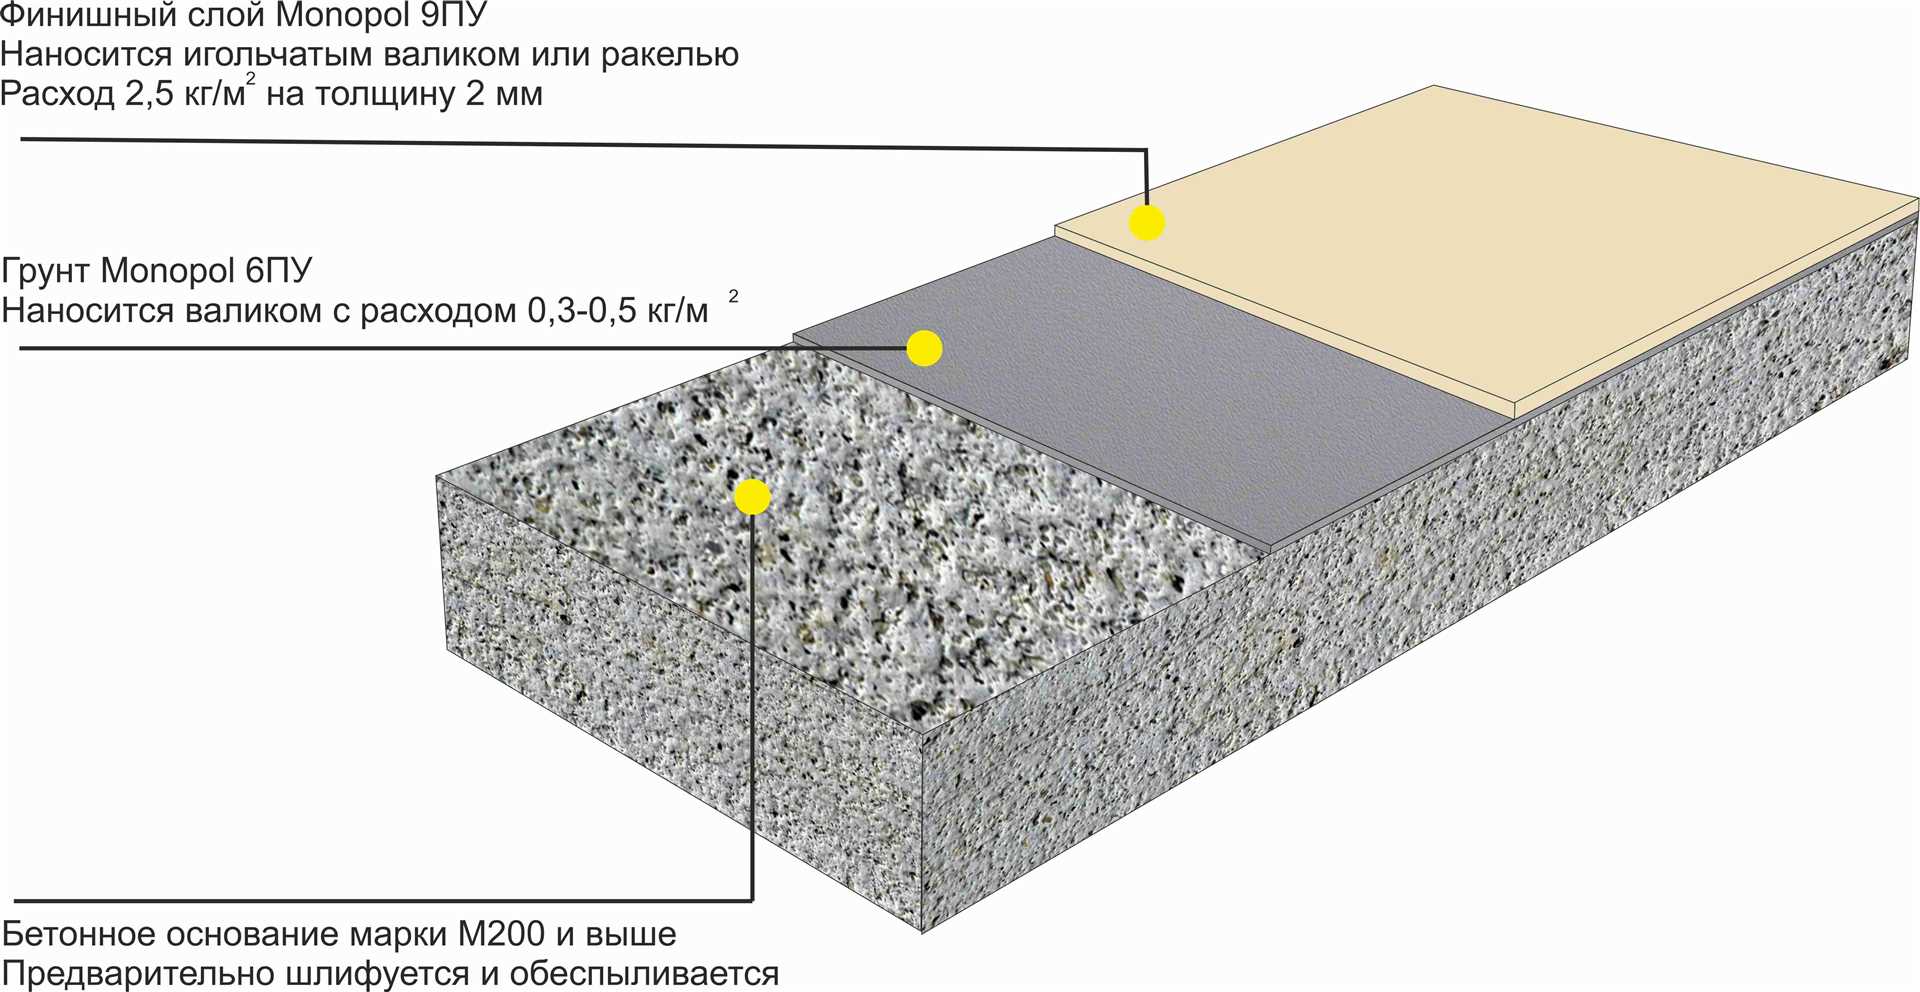 2. Песчано-цементная стяжка с добавкой полимерных волокон